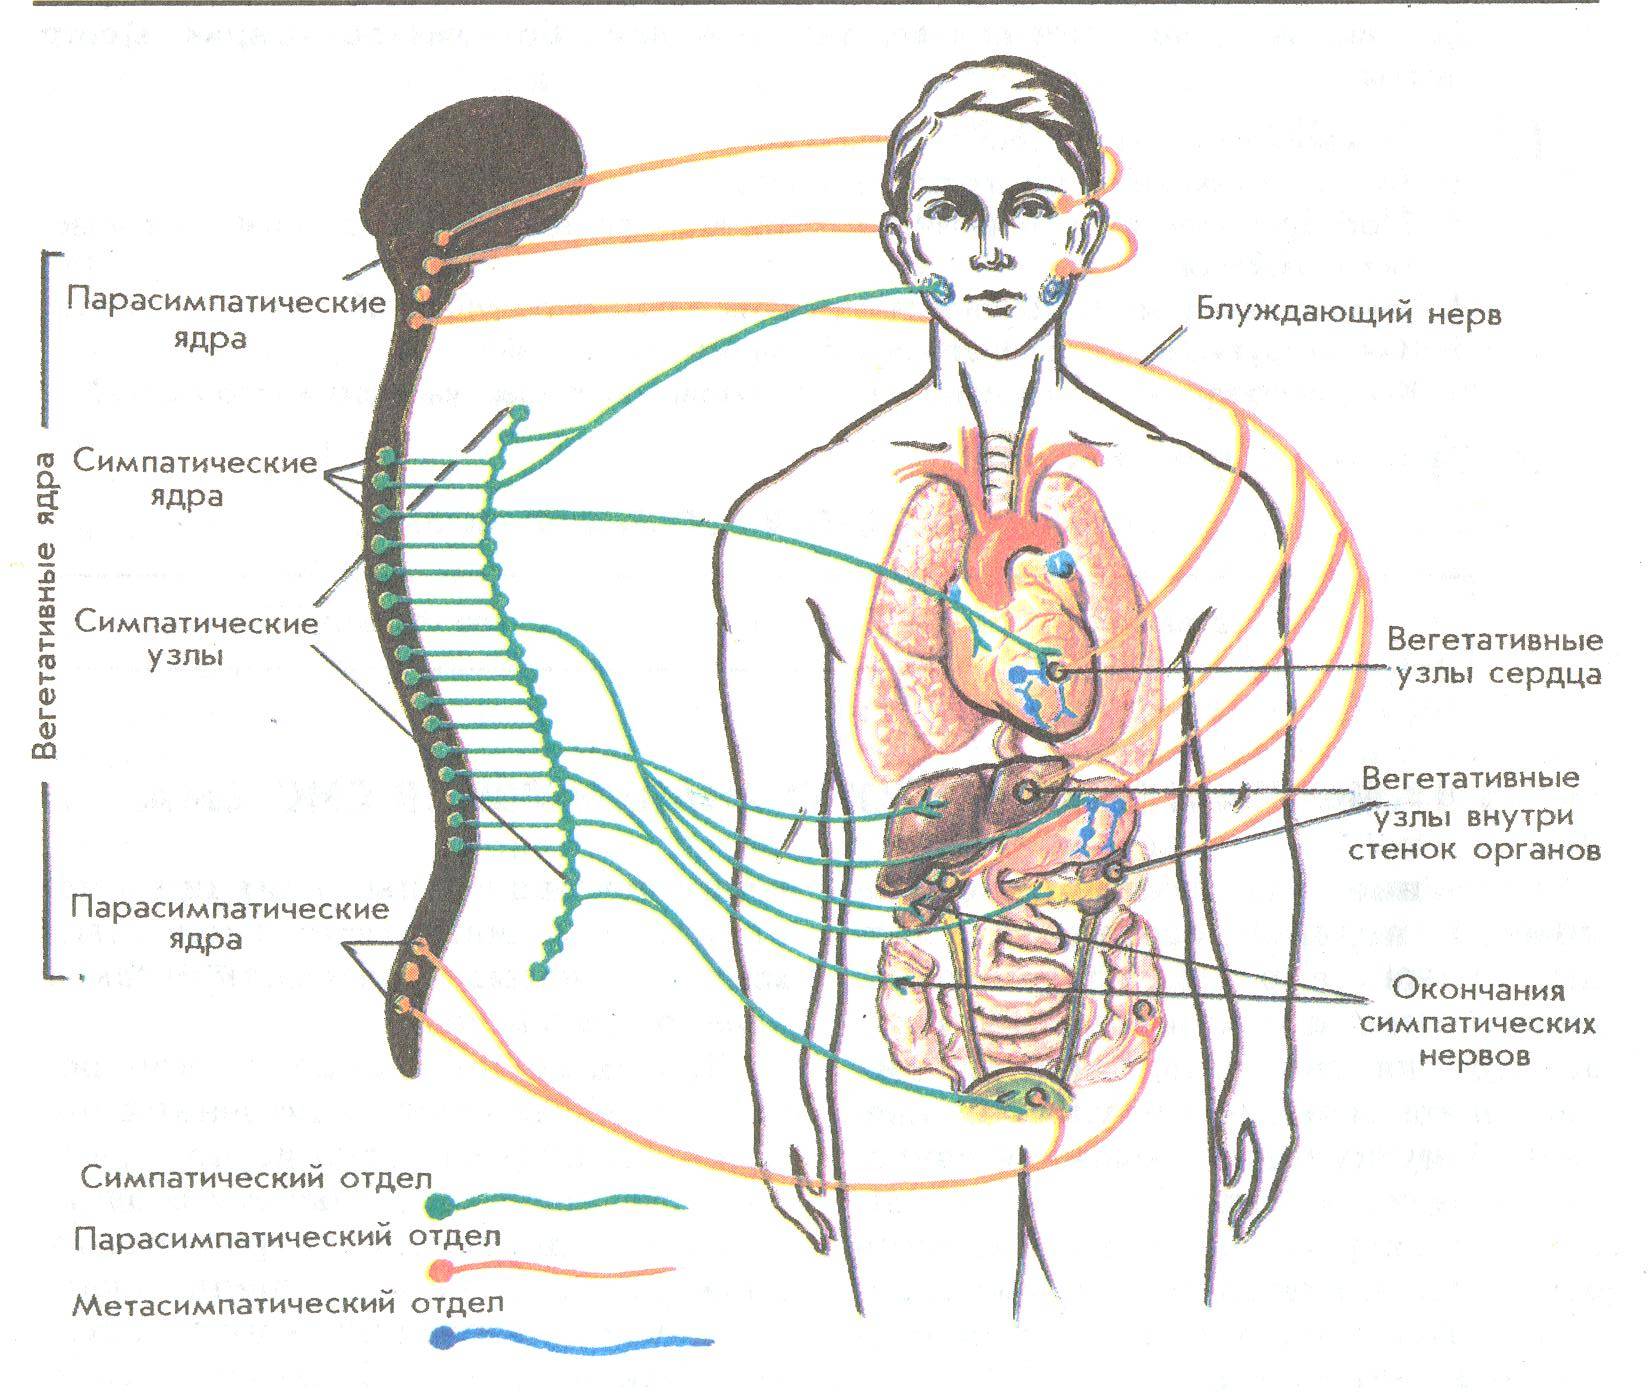 Блуждающий нерв желудка симптомы и лечение - лечимпросто